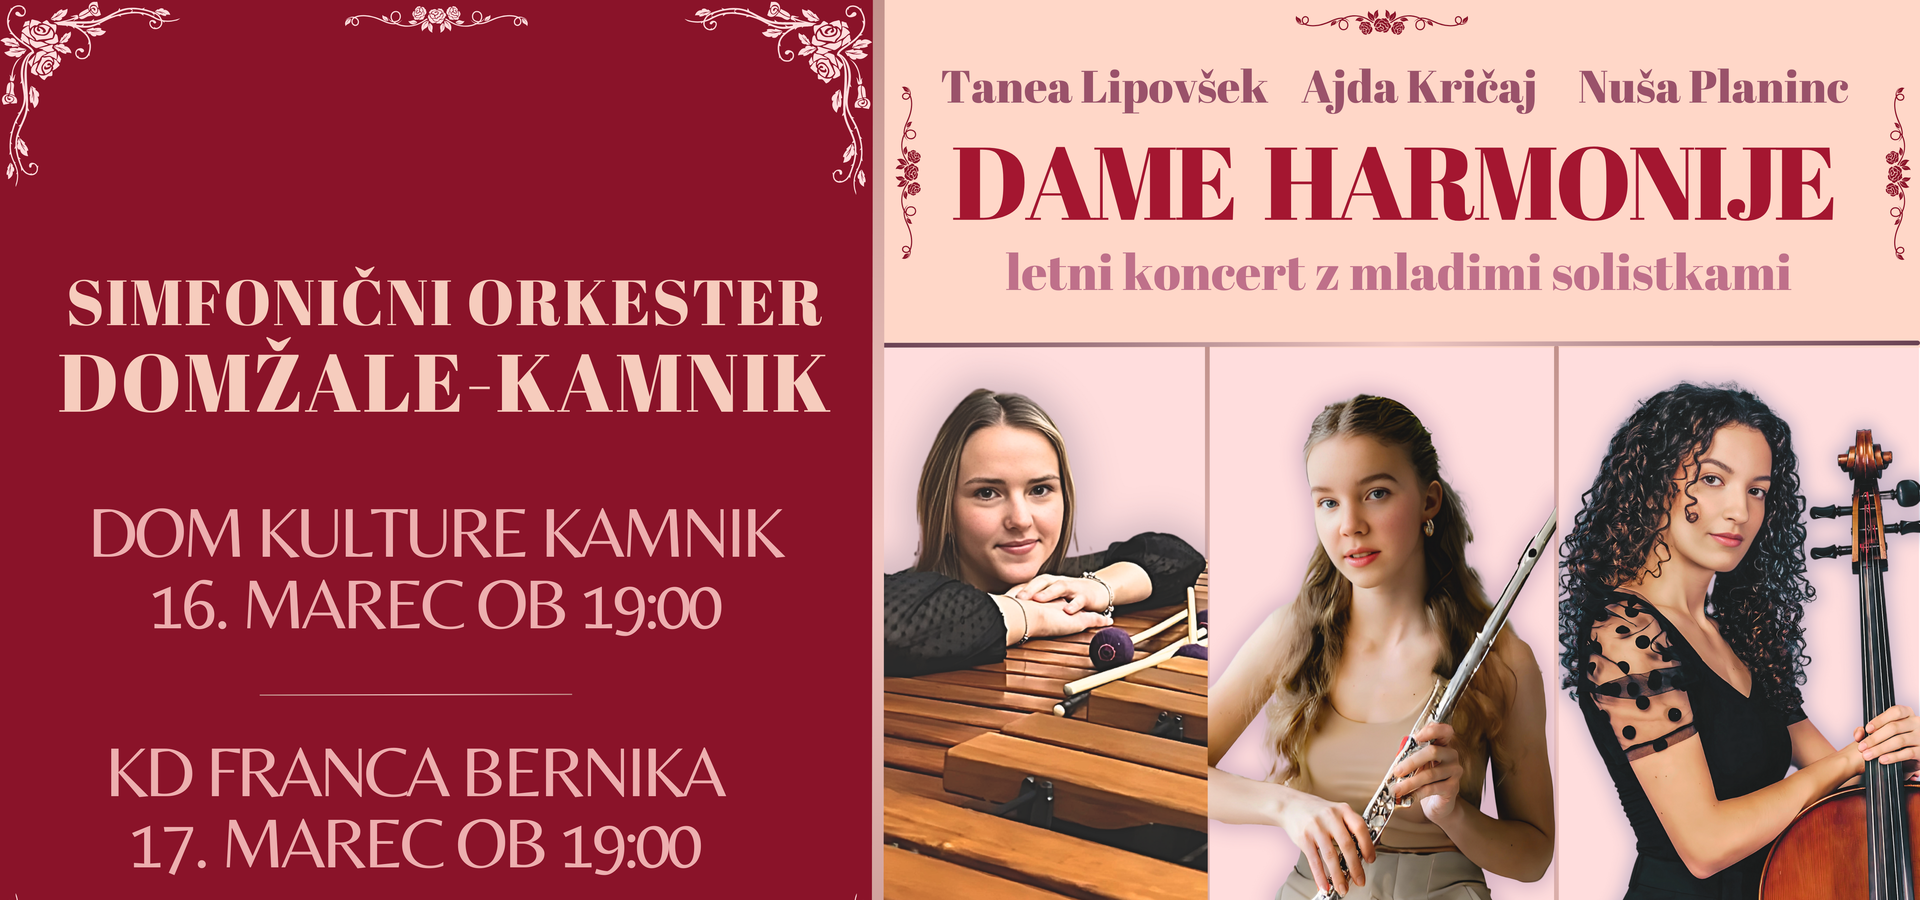 Simfonični orkester Domžale-Kamnik: Dame harmonije